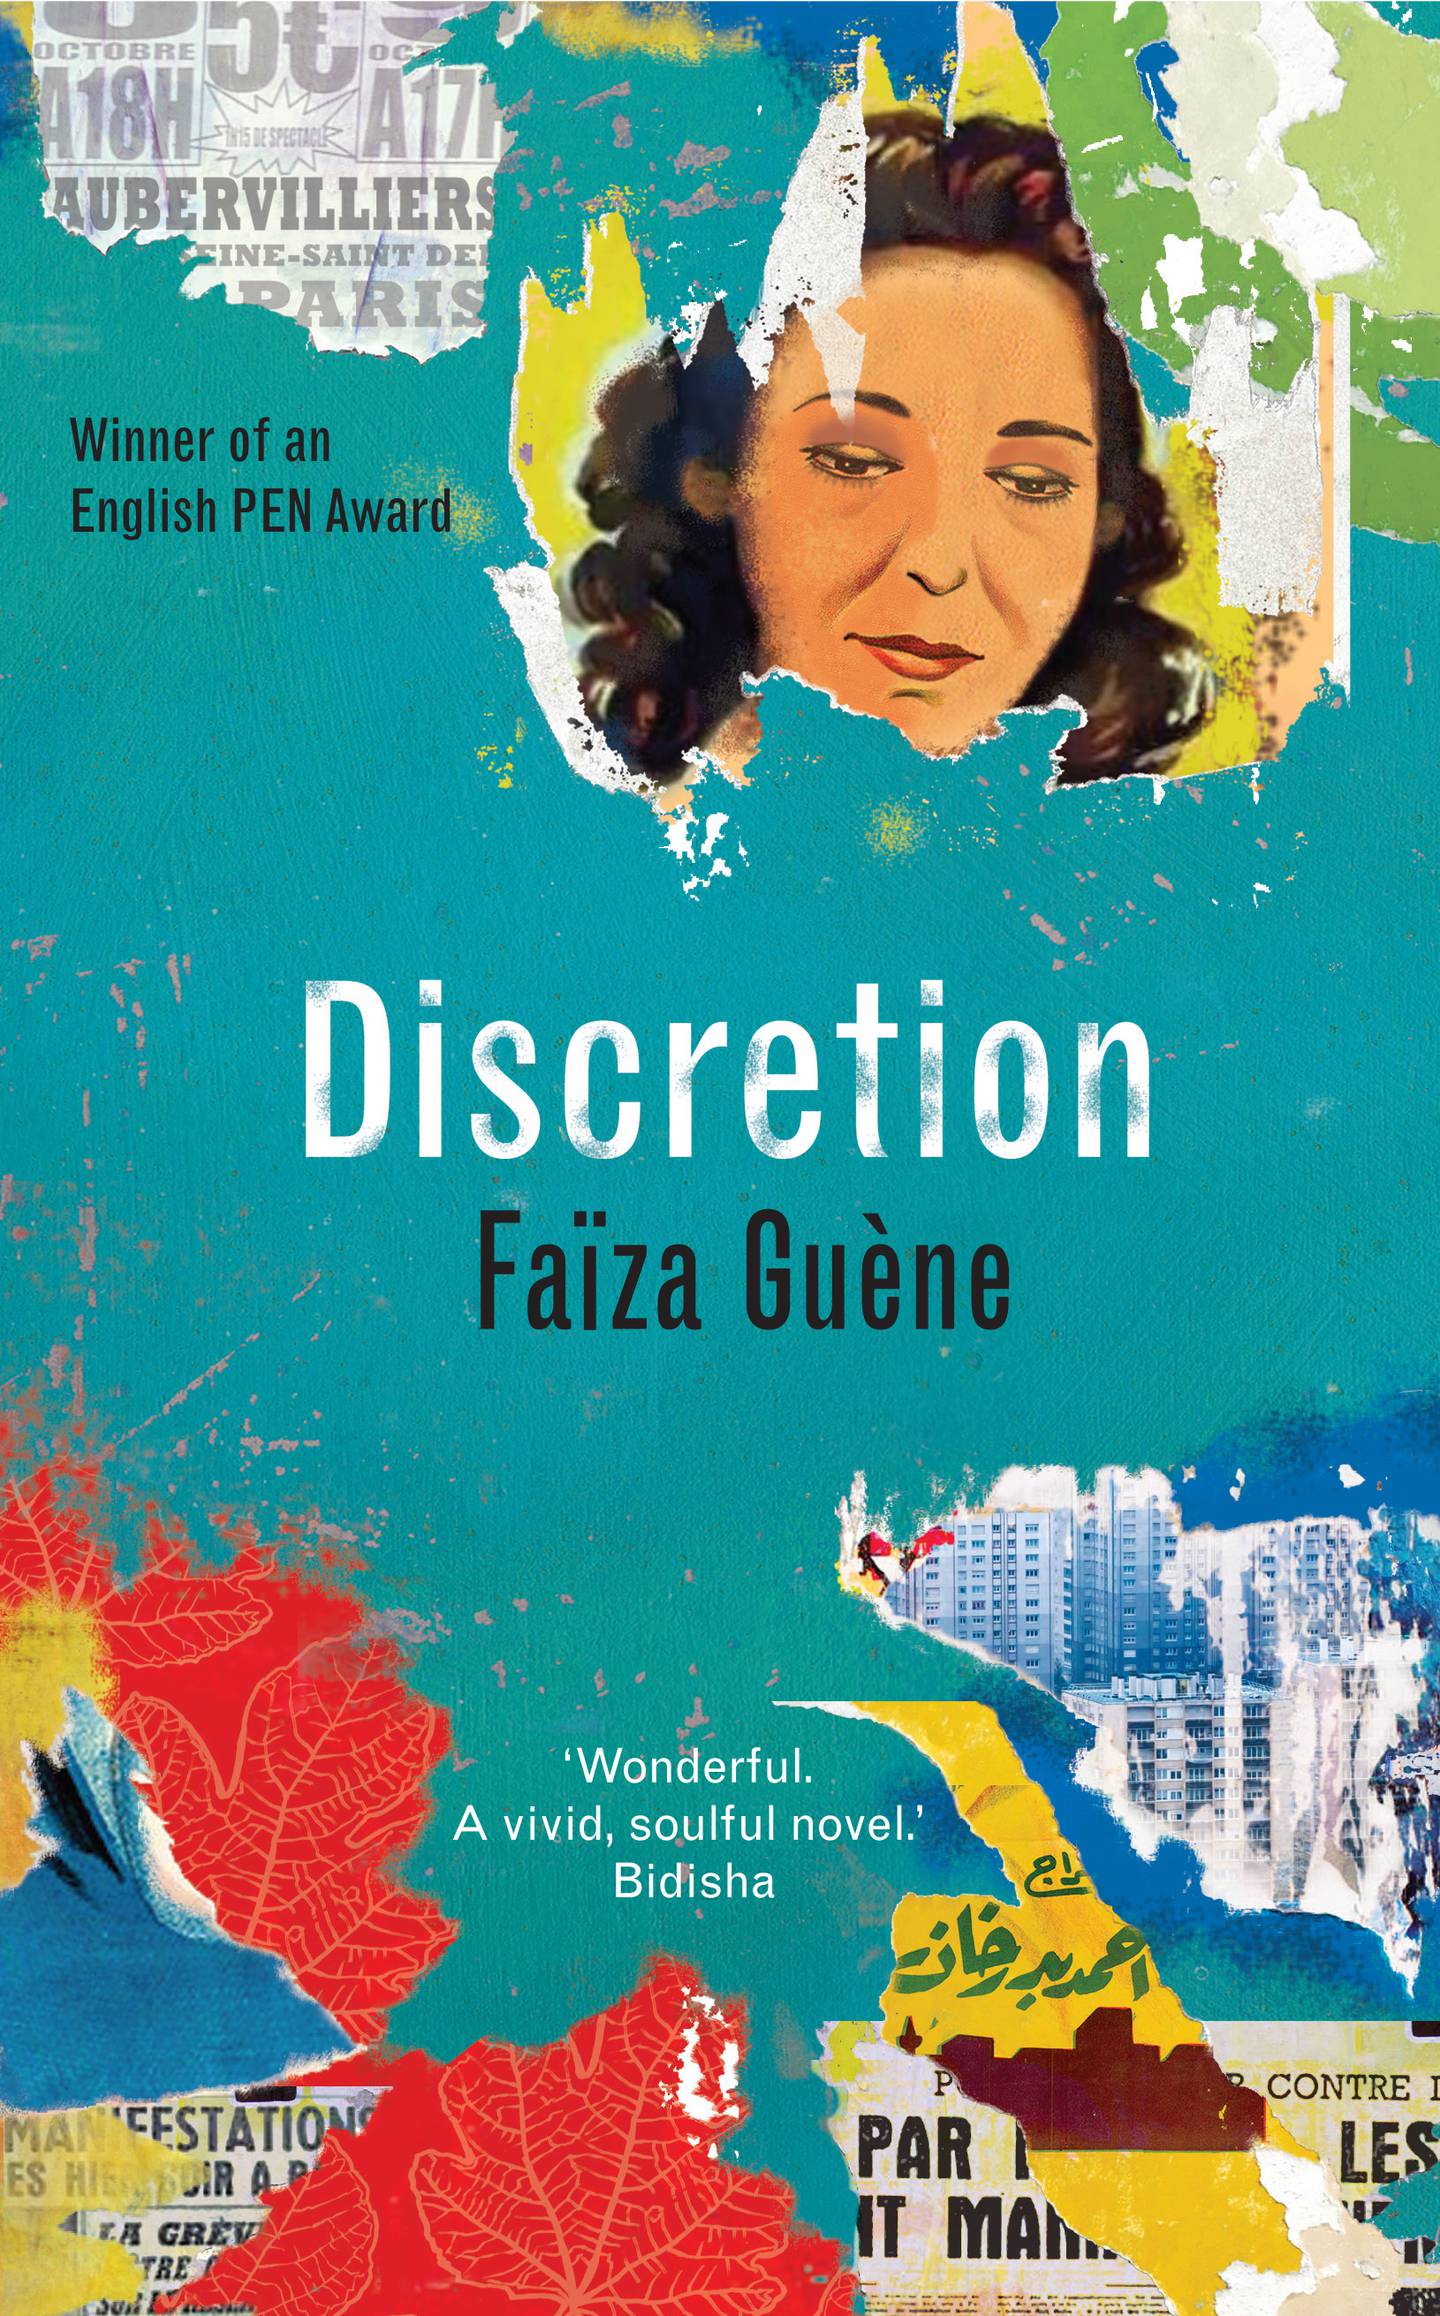 'Discretion' by Faiza Guene.